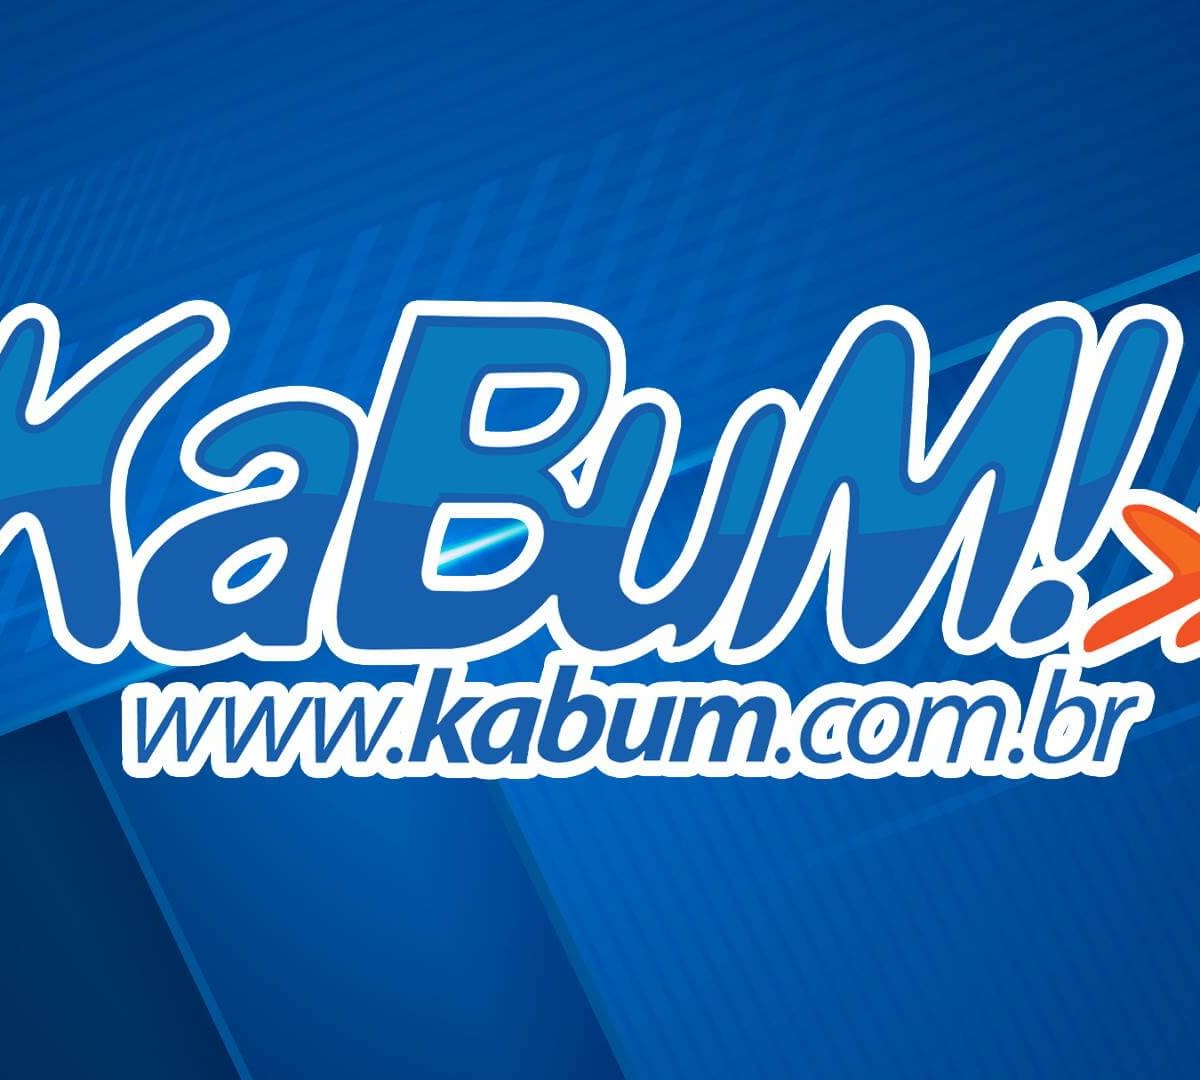 KaBuM! - www.kabum.com.br - Mega Oferta de Aniversário. #G27